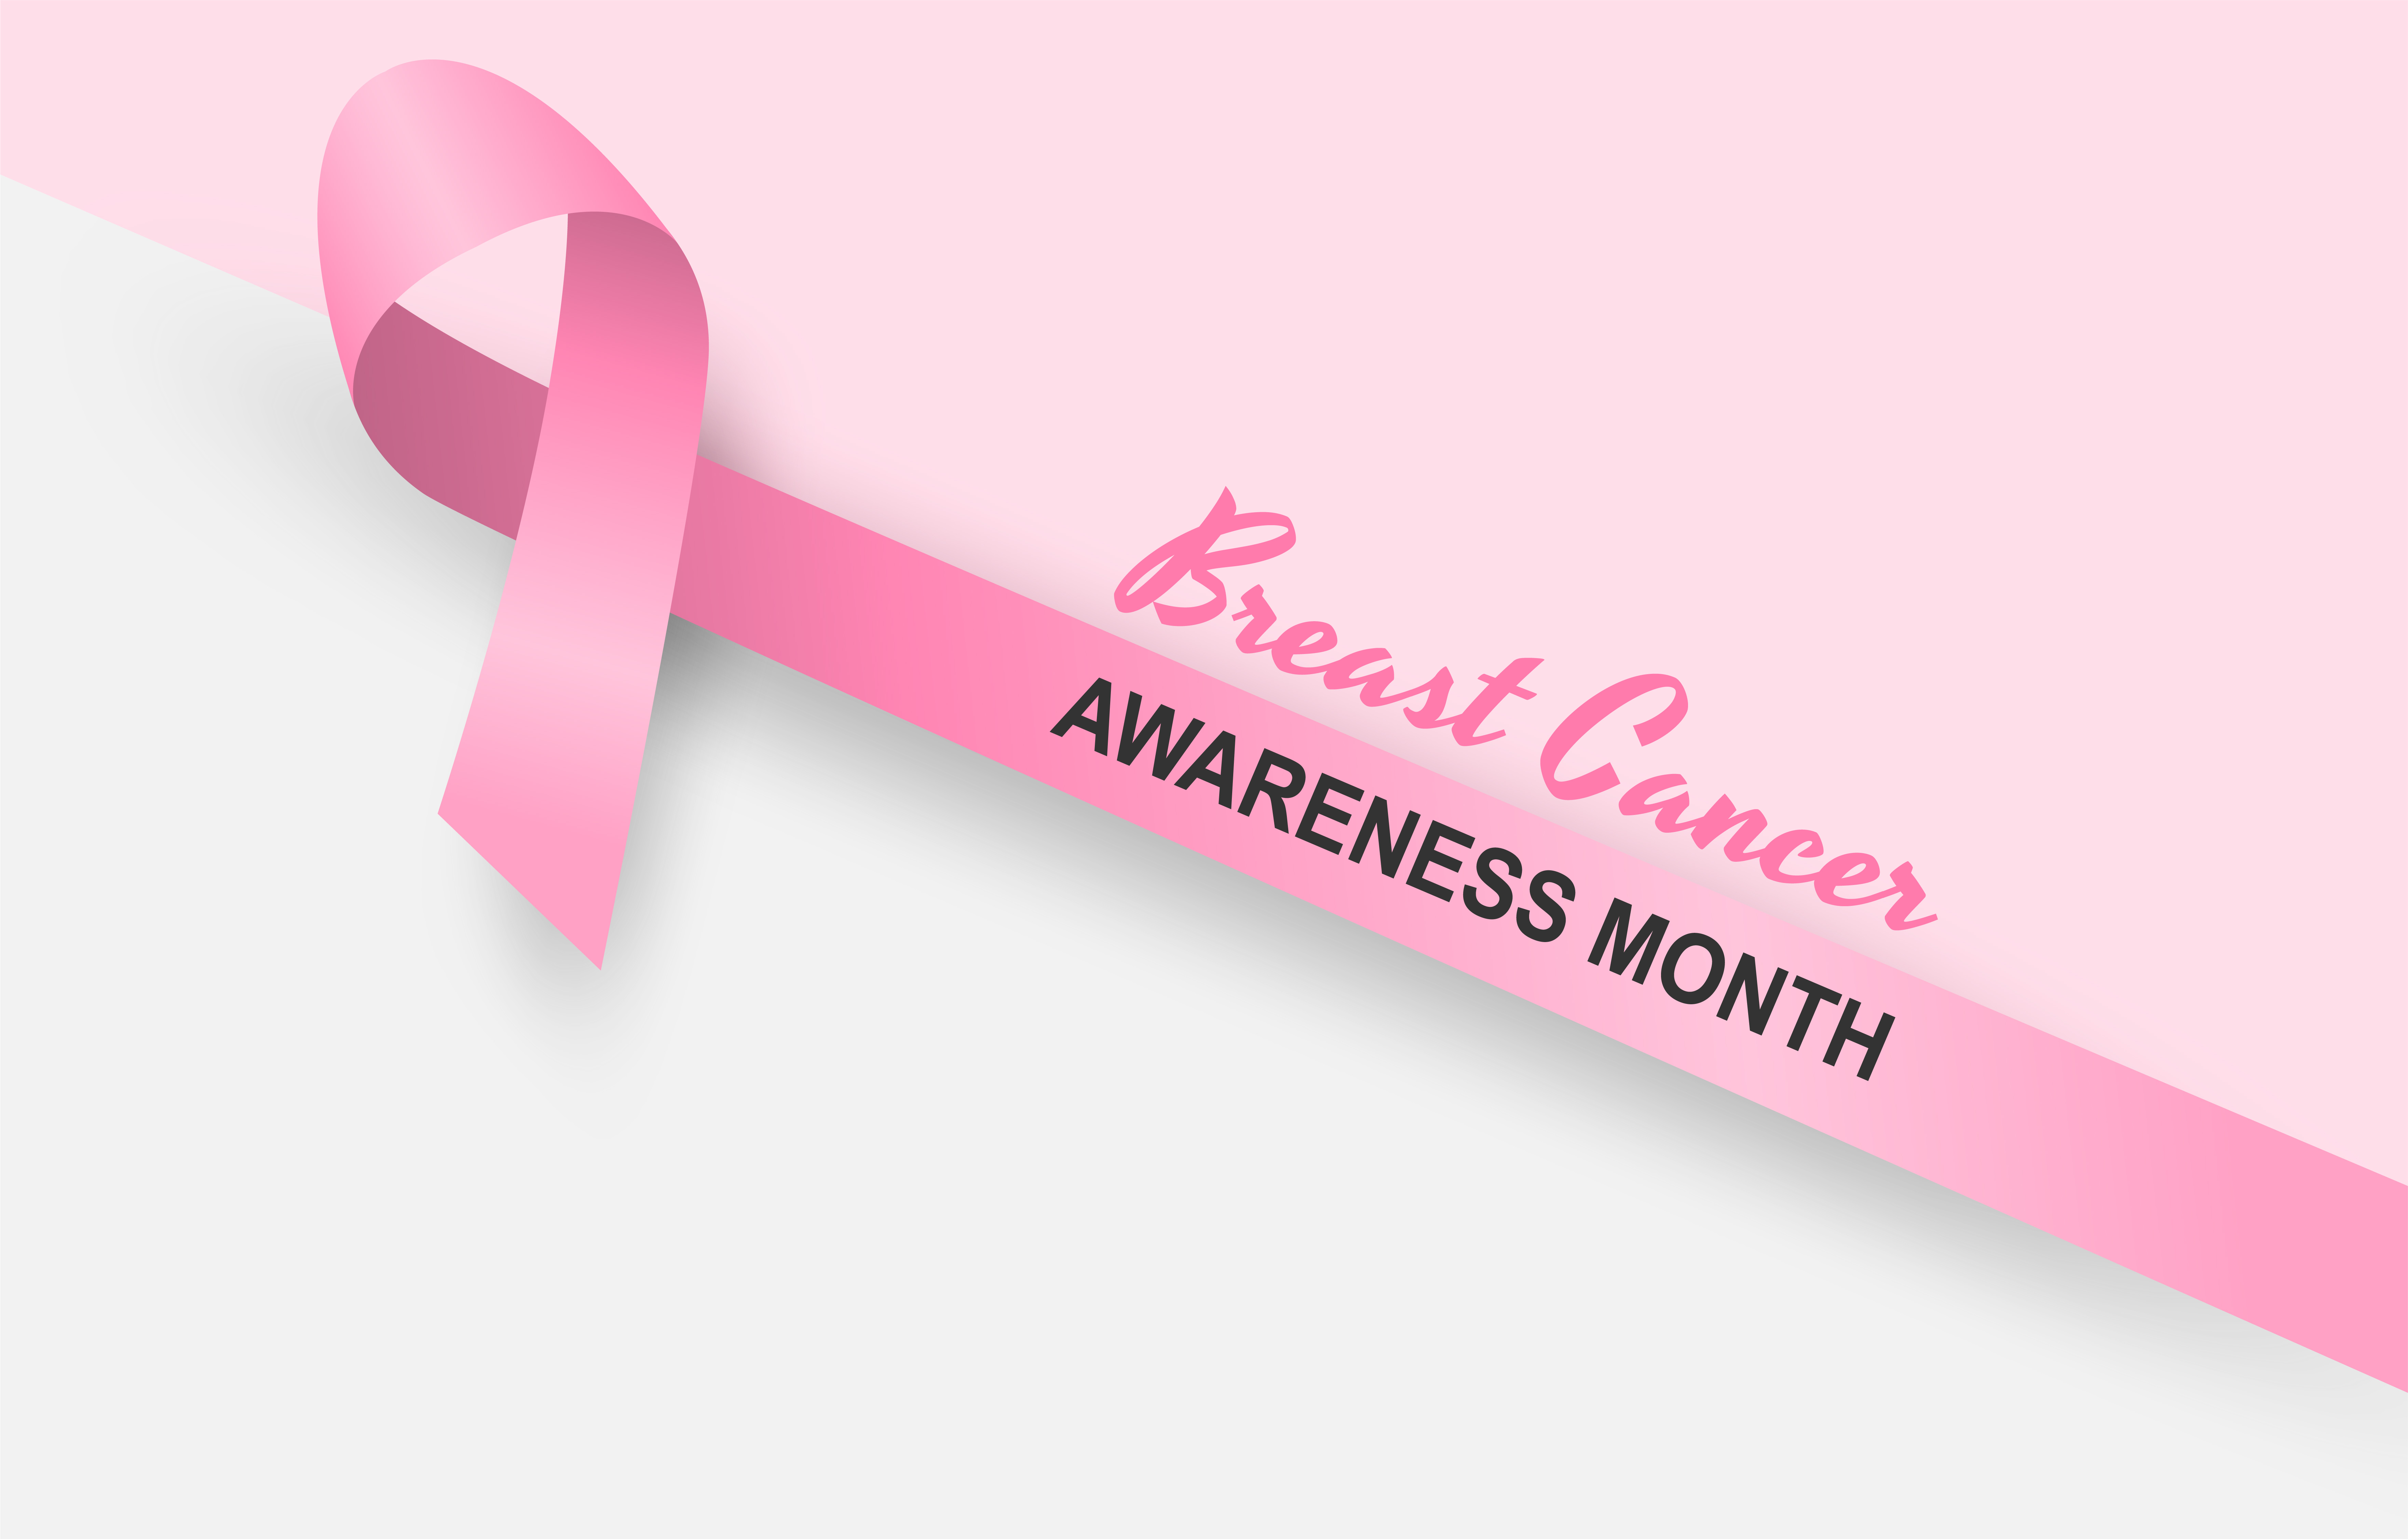 Thiết kế ý nghĩa cho chiến dịch nhận thức về ung thư vú sẽ khiến bạn cảm thấy đầy cảm hứng. Những hình ảnh, thông điệp ý nghĩa liên quan đến chiến dịch này sẽ giúp bạn nâng cao kiến thức, bảo vệ sức khỏe cho chính bản thân và người thân xung quanh. Hãy cùng tìm hiểu và tham gia cùng chiến dịch này.